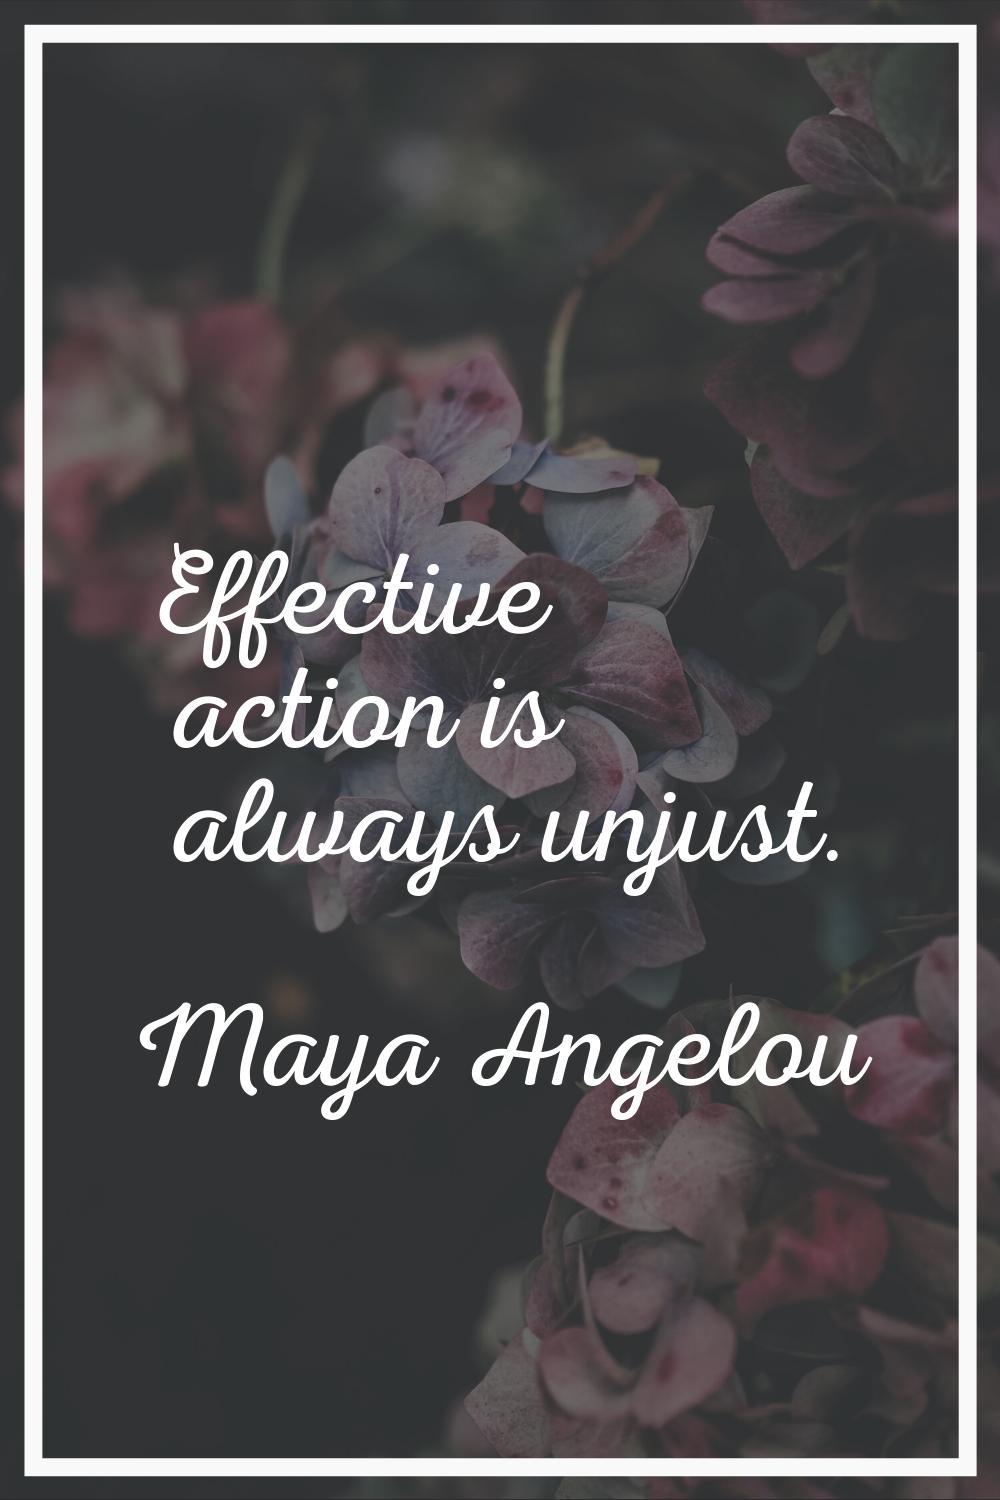 Effective action is always unjust.